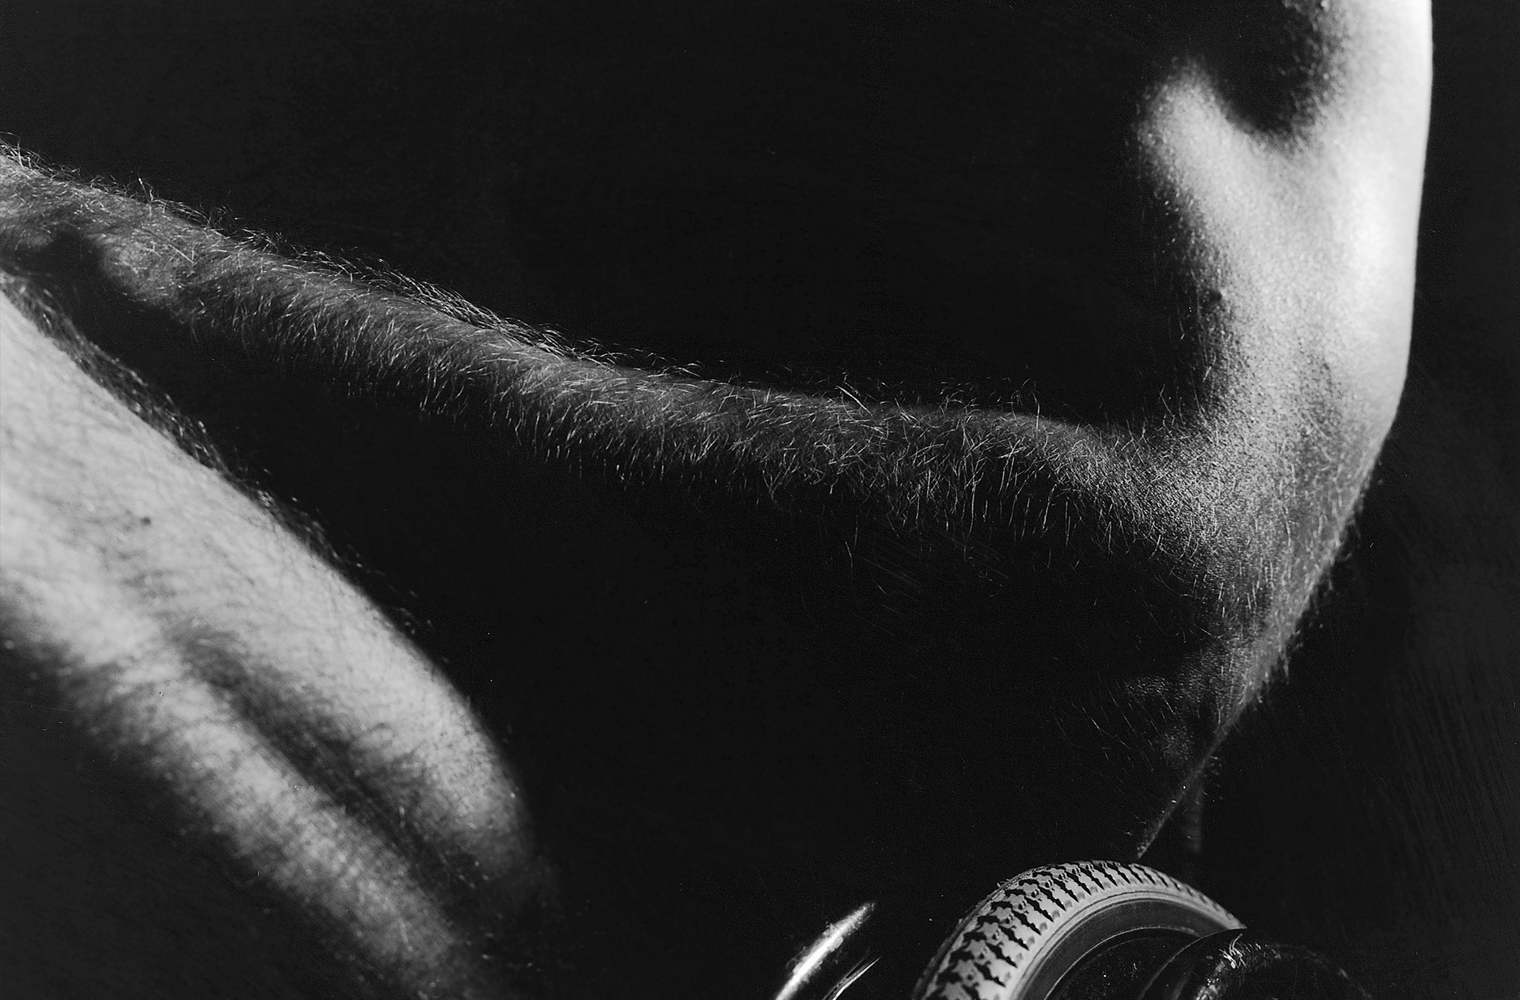 Aktfoto eines Mannes im Rollstuhl aus der Schwarz-Weiß-Serie "Ganz unvollkommen" von Rasso Bruckert - Rasso Bruckert